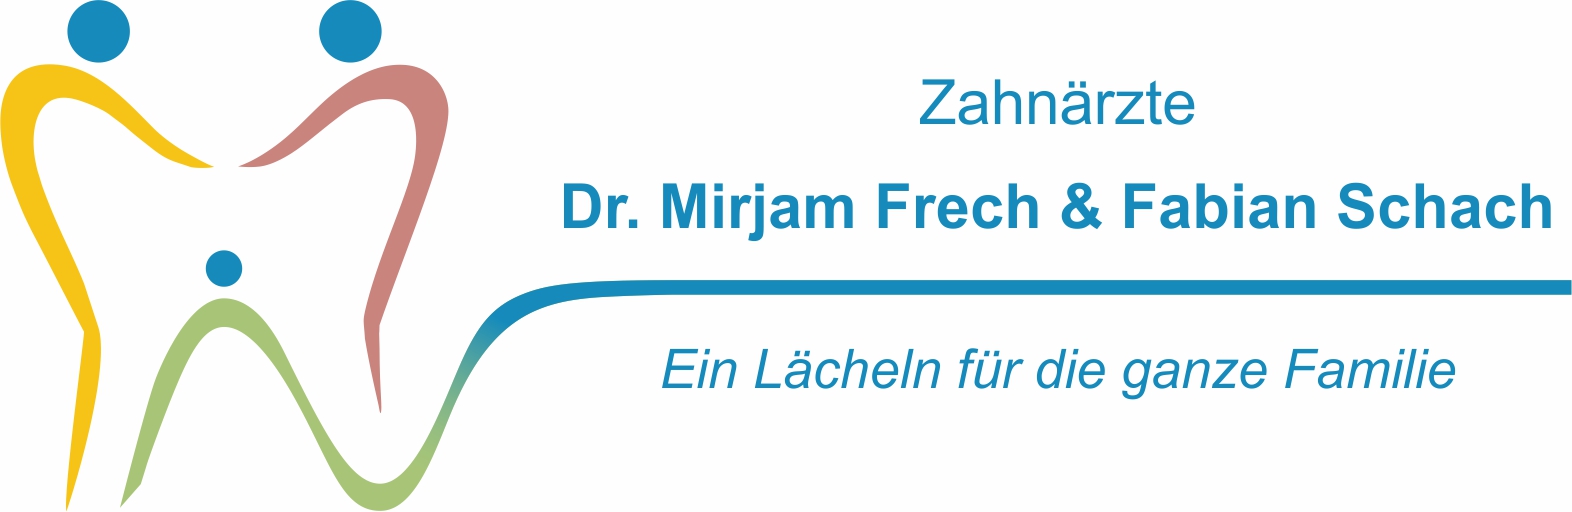 Dr. Frech & Schach Logo